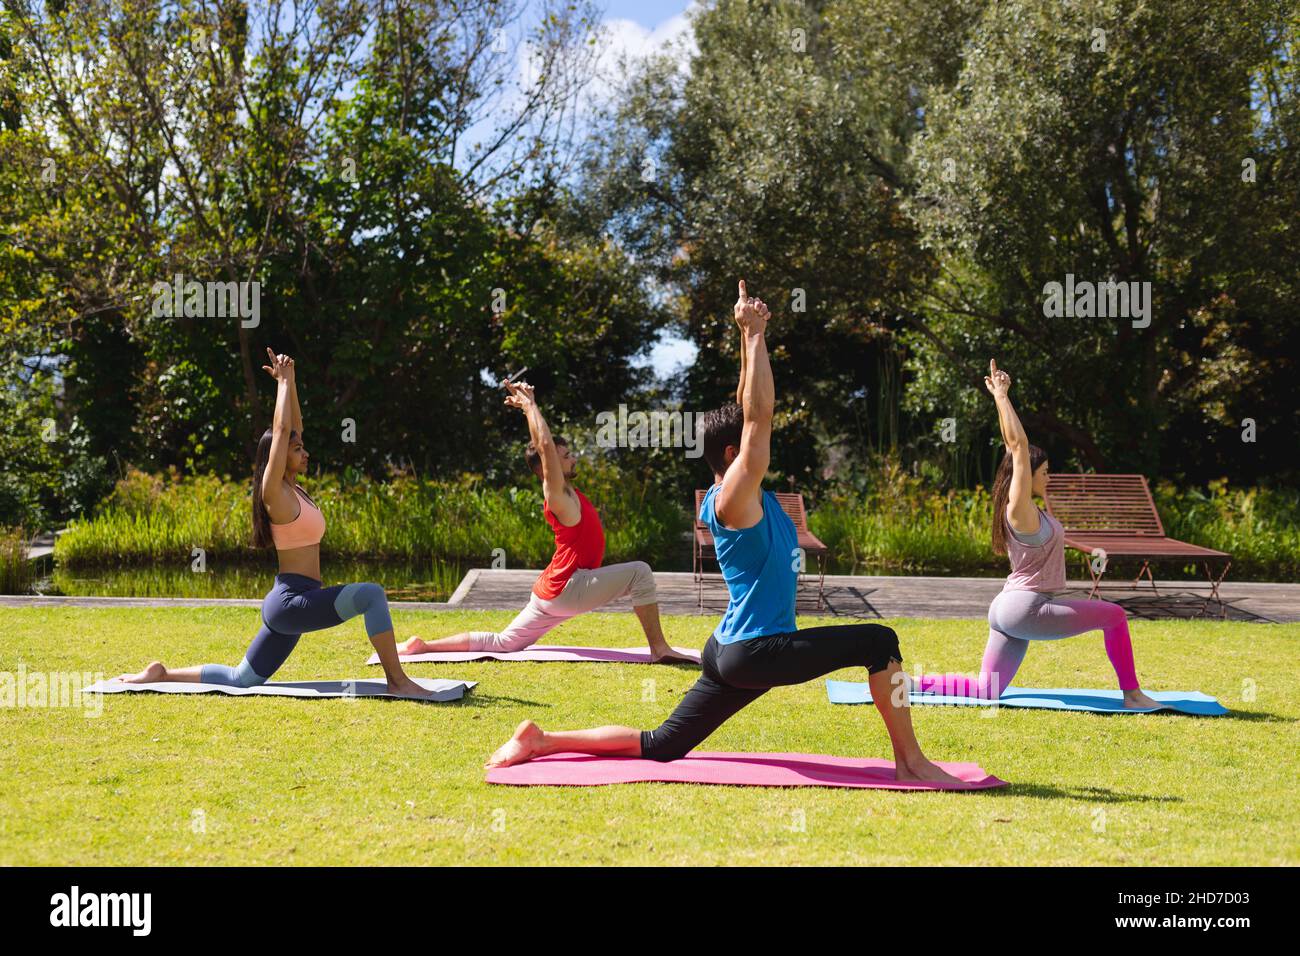 Uomini e donne con le braccia sollevate praticare yoga su materassini da ginnastica in parco il giorno di sole Foto Stock